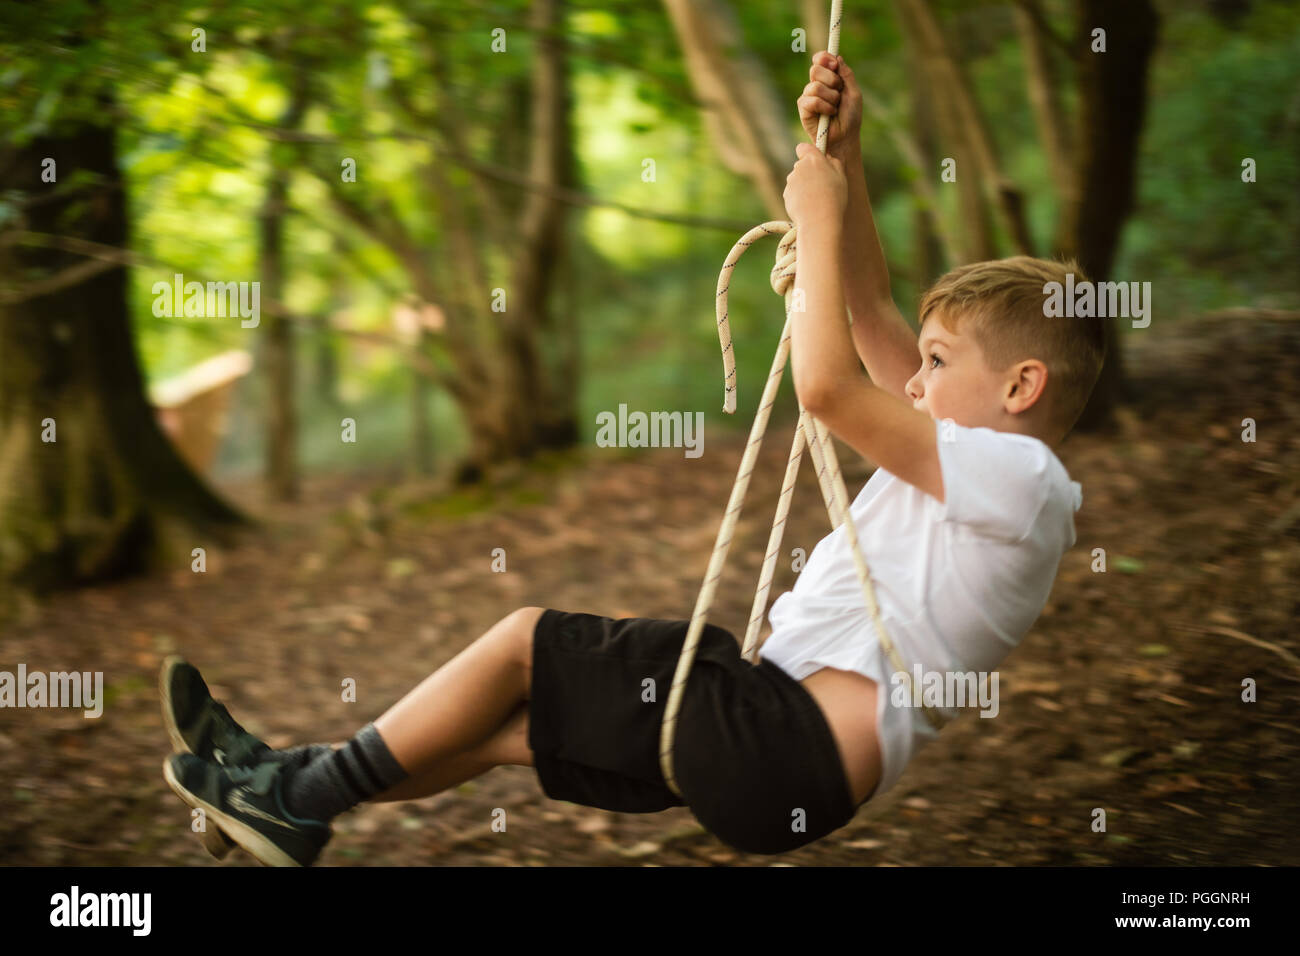 https://c8.alamy.com/comp/PGGNRH/boy-swinging-on-rope-swing-PGGNRH.jpg